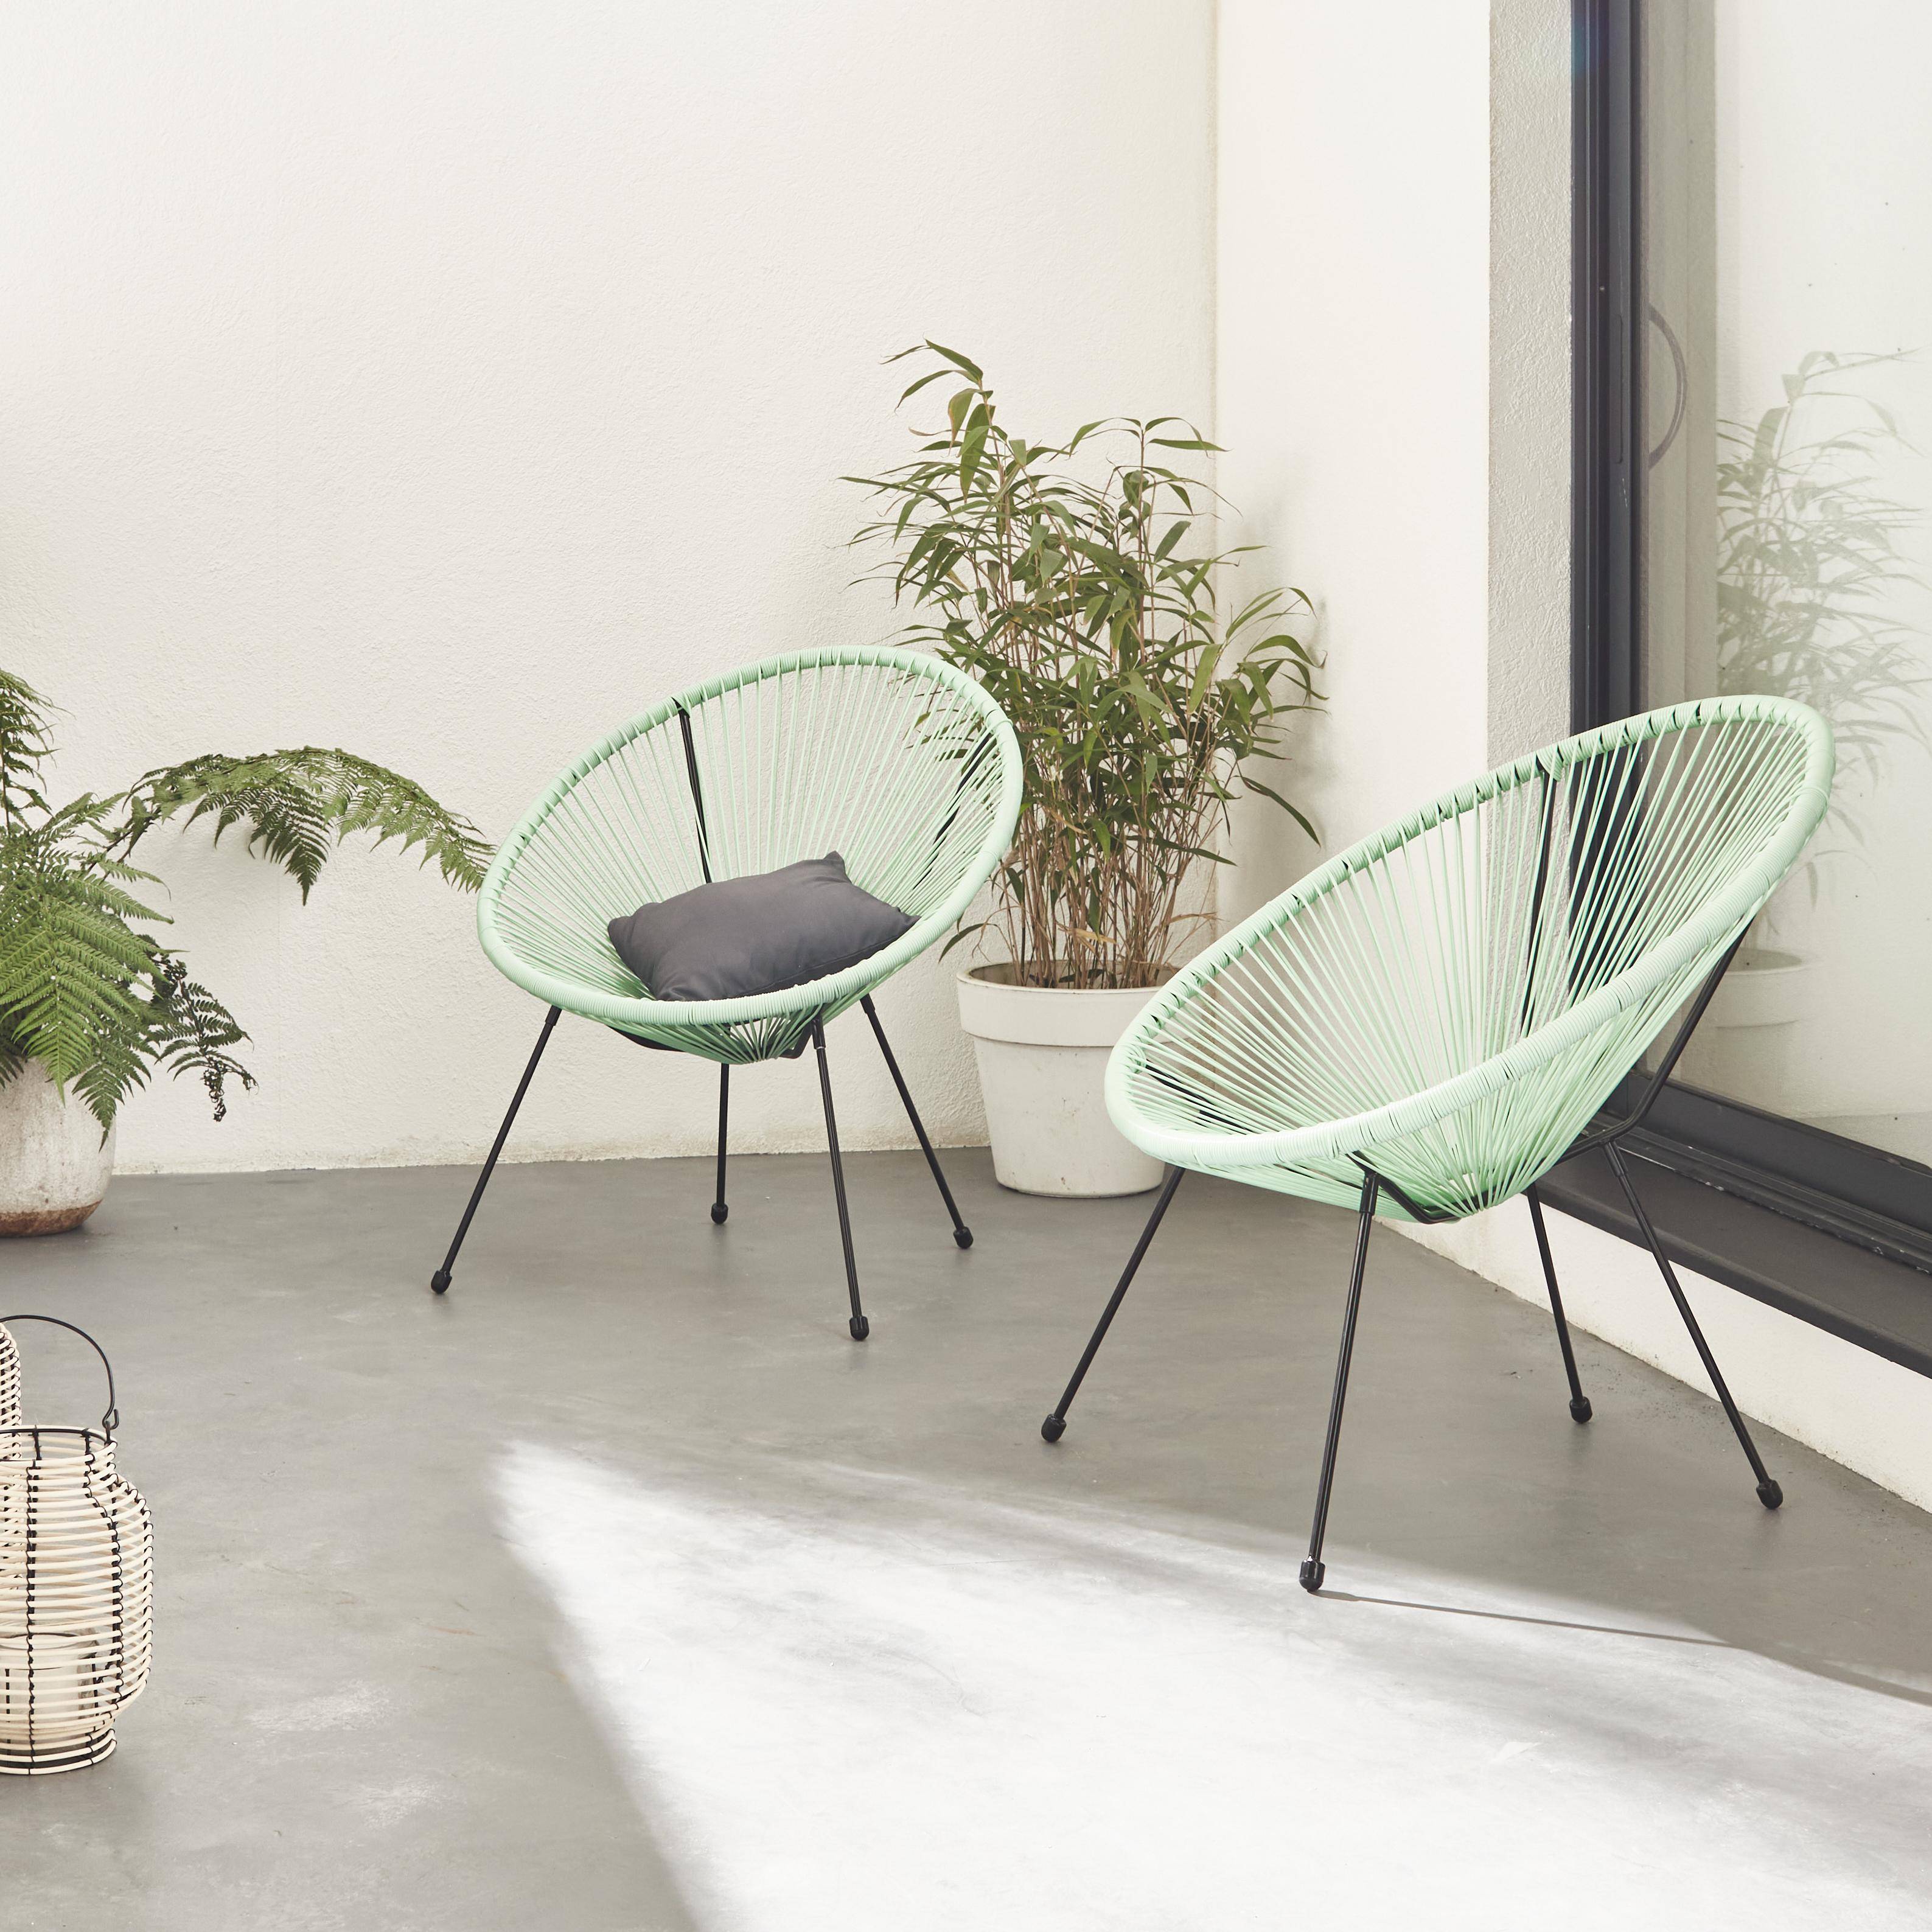 Set mit 2 eierförmigen Sesseln - Acapulco seegrün - 4-beiniger Sessel im Retro-Design, Kunststoffschnur, innen / außen Photo1